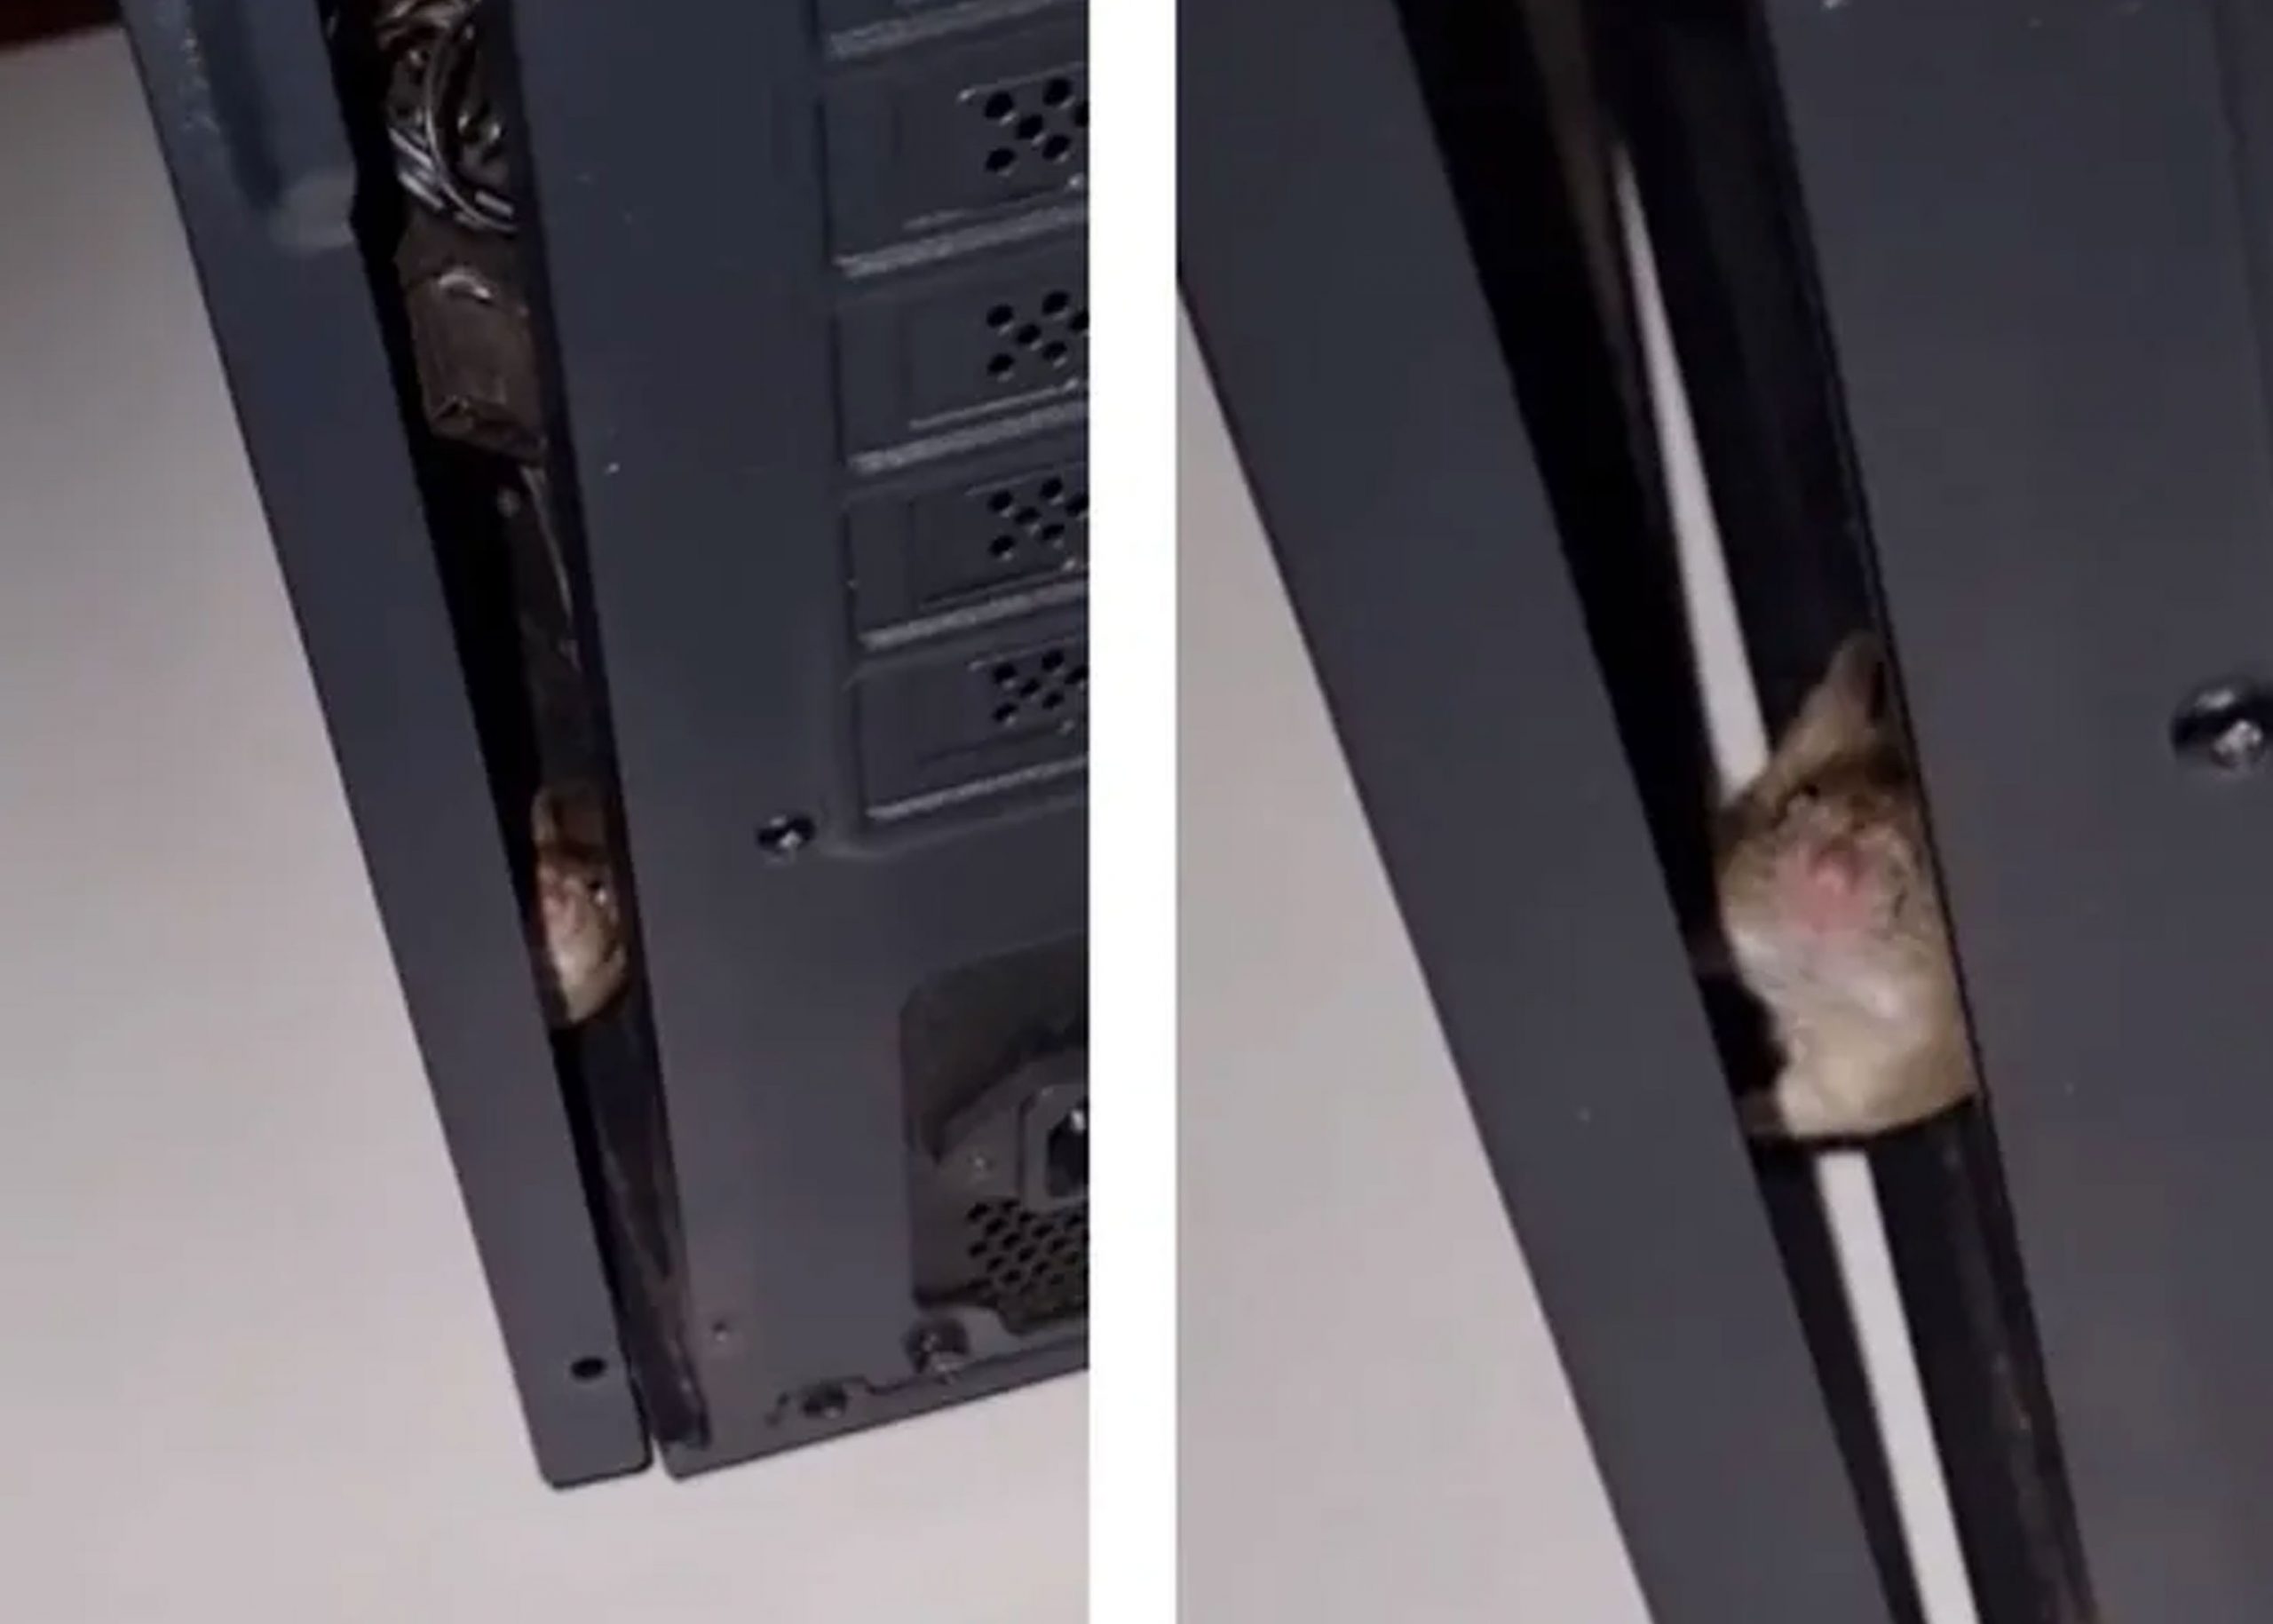 ¿Buscaba queso? Joven encuentra un ratón dentro de su computadora (Video)